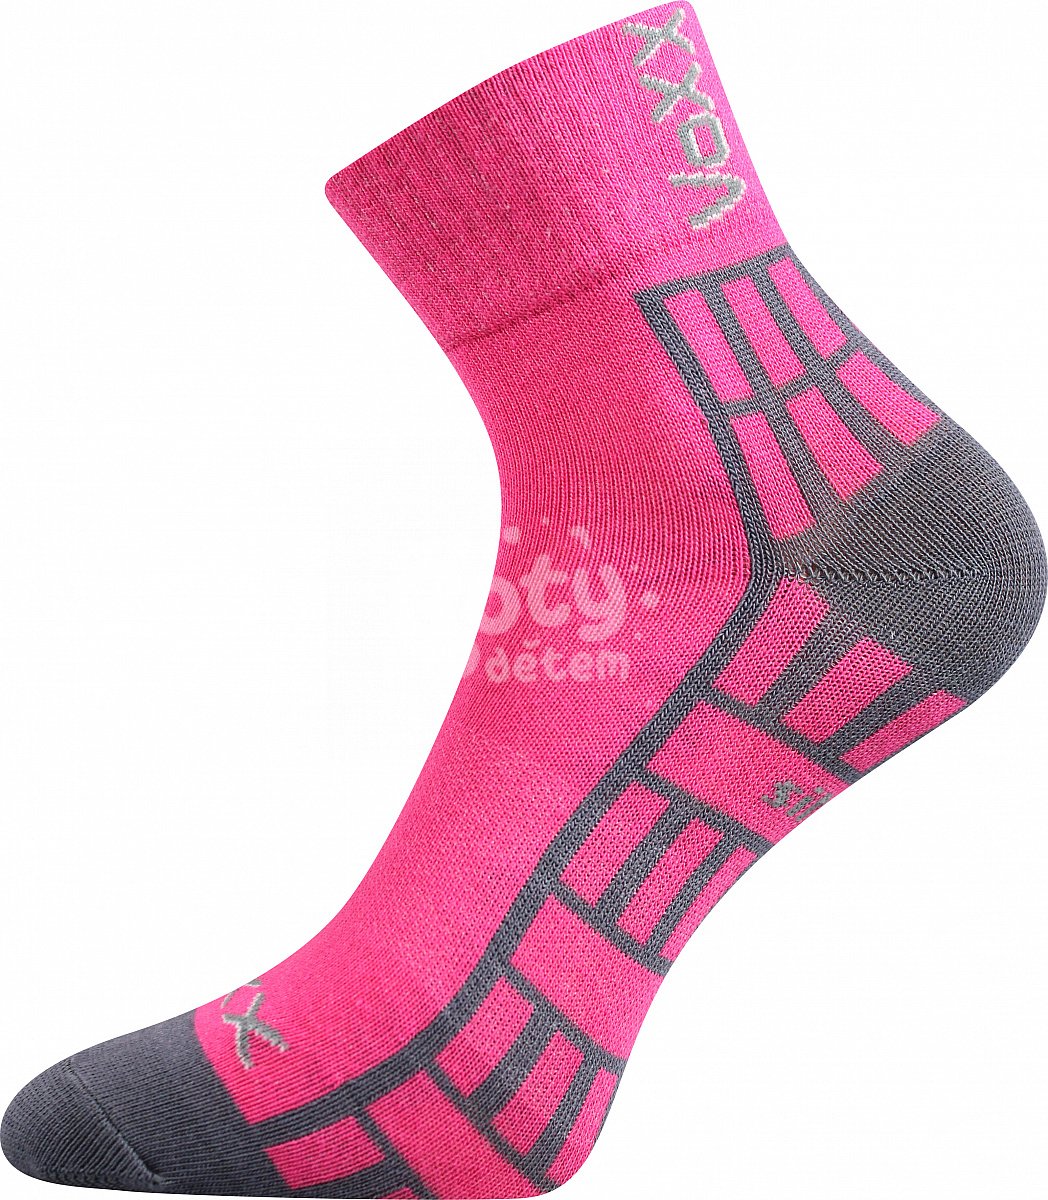 Ponožky VoXX Maik silproX mix 1 pár růžová